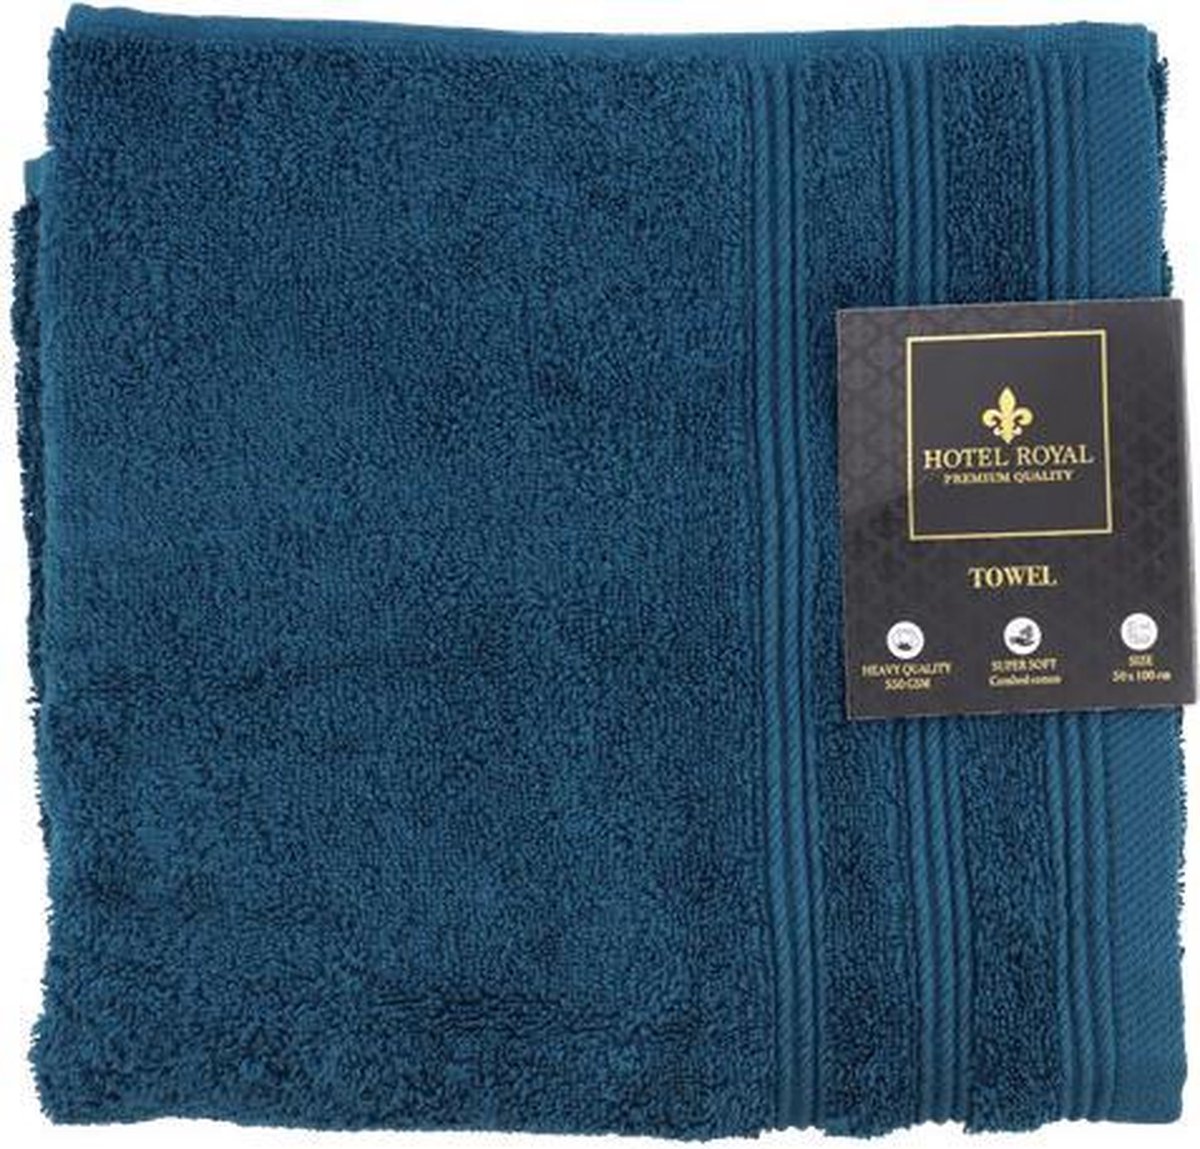 Hotel Handdoek - Badhanddoek Blauw 50x100 cm - Superzacht Gekamd katoen / 550 GSM Zware kwaliteit Badhanddoek - Hotel handdoek - badlaken - badhandoek - Super soft - Towels - serviette de bain -